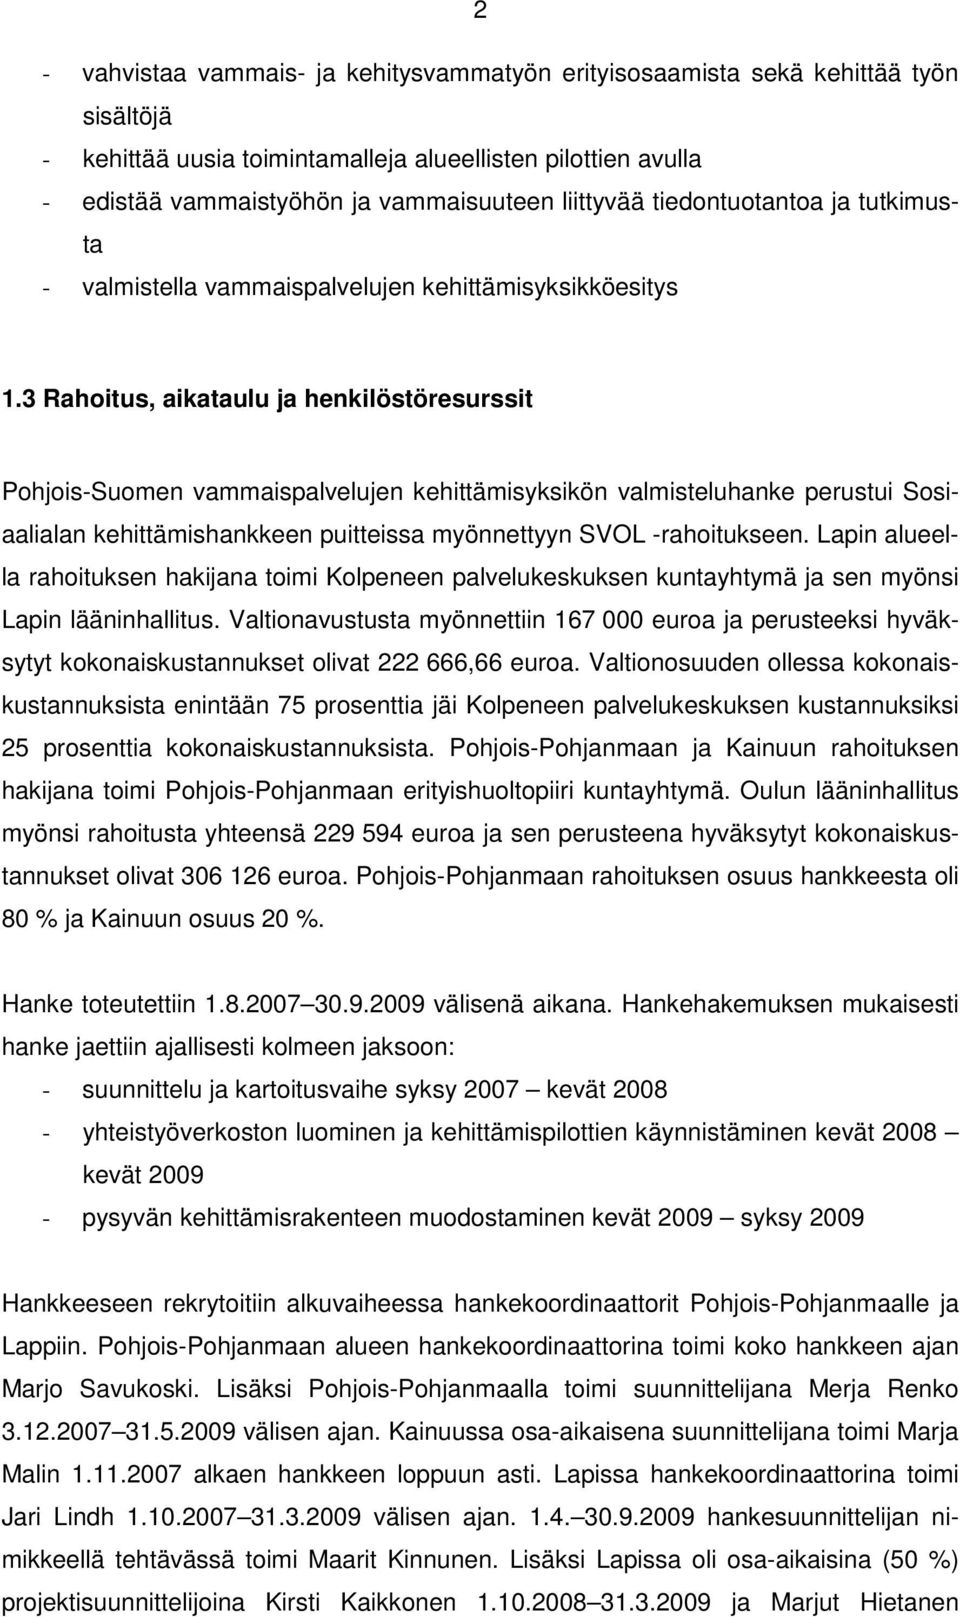 3 Rahoitus, aikataulu ja henkilöstöresurssit Pohjois-Suomen vammaispalvelujen kehittämisyksikön valmisteluhanke perustui Sosiaalialan kehittämishankkeen puitteissa myönnettyyn SVOL -rahoitukseen.